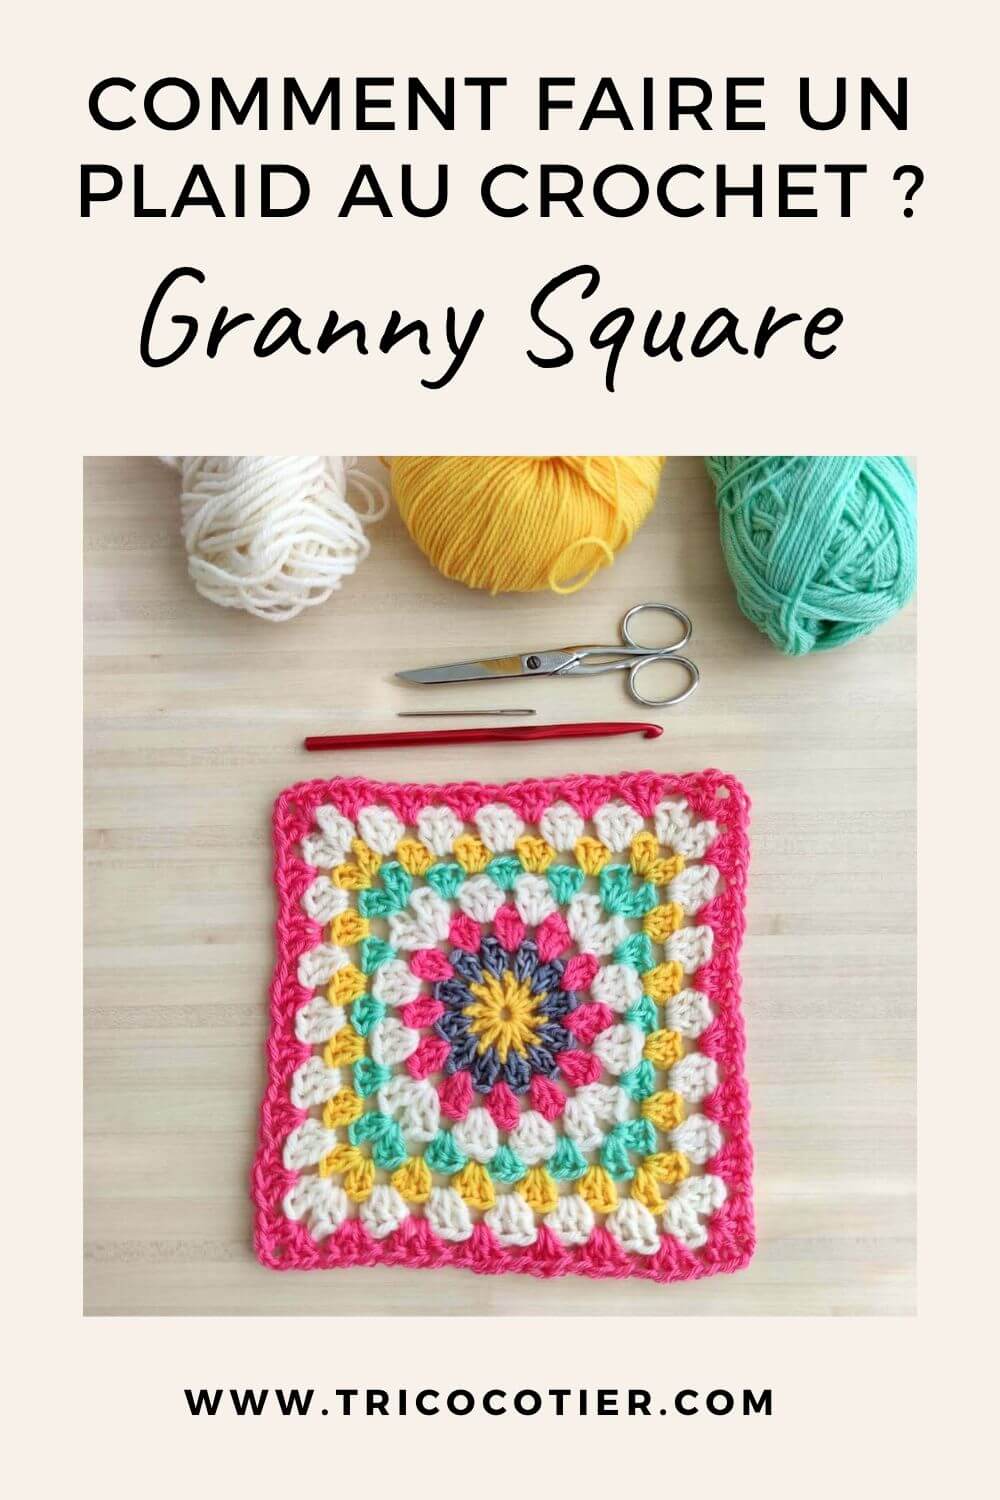 Comment faire un plaid au crochet - tutoriel pour crocheter un granny square